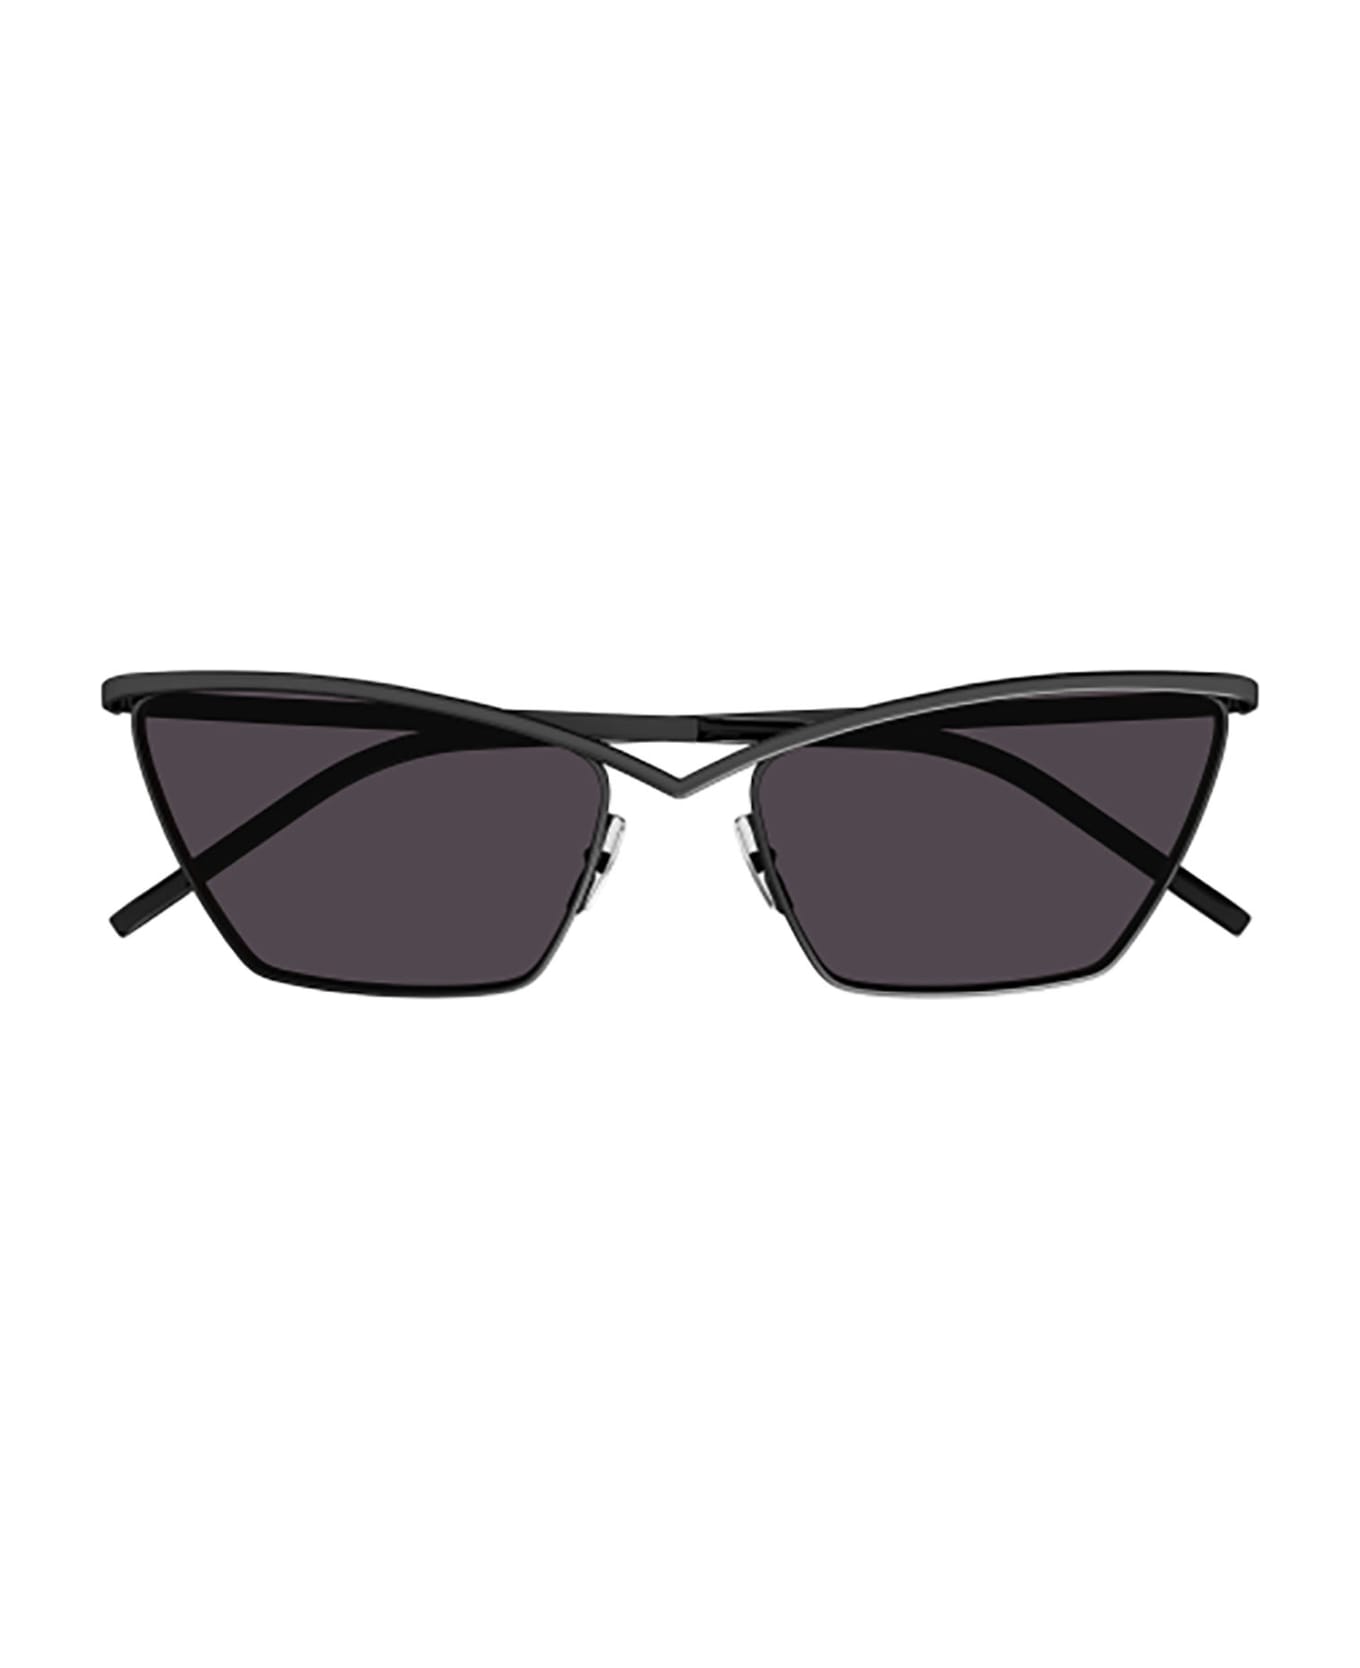 Saint Laurent Eyewear SL 637 Sunglasses - Black Black Black サングラス